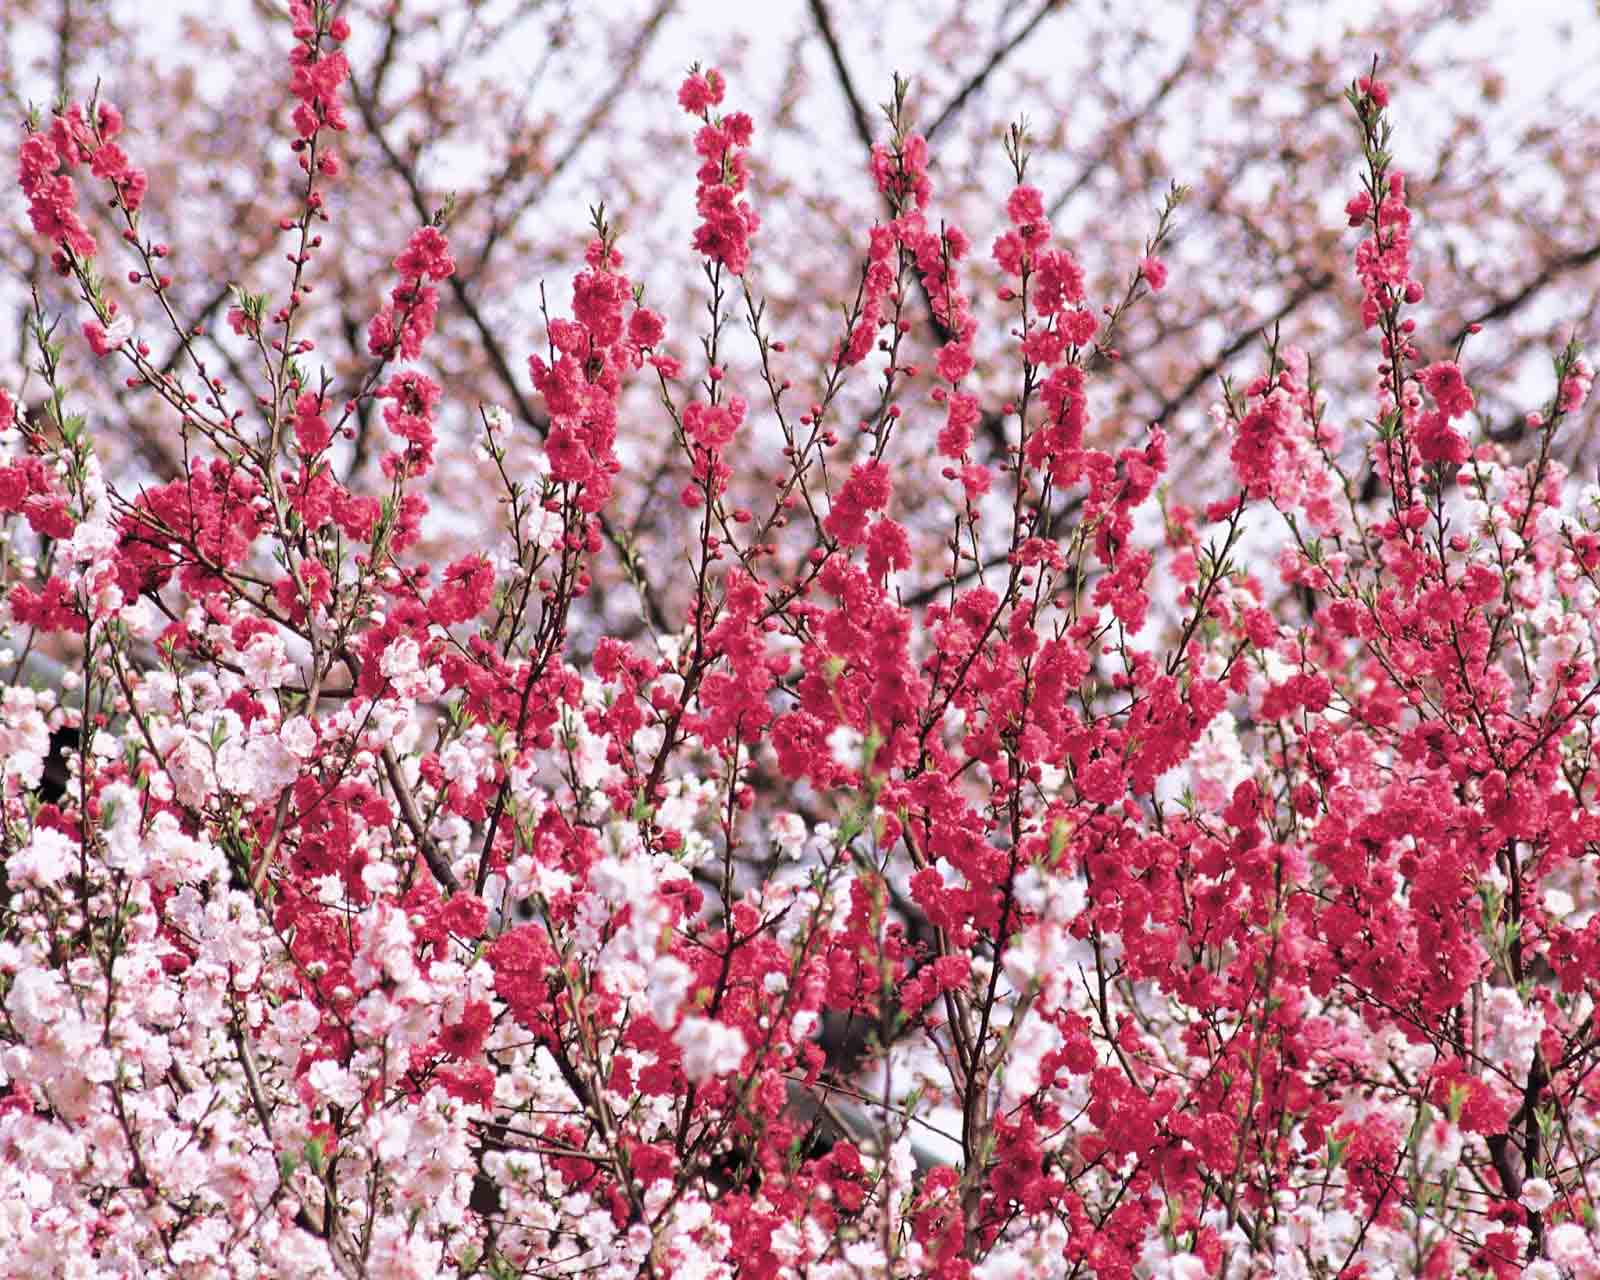 Hoa đào tiếp tục được khoe sắc trong hình ảnh này, với màu hồng đậm rực rỡ và sức sống mãnh liệt. Nhìn vào hình ảnh hoa đào giúp ta cảm thấy hạnh phúc và đầy năng lượng để bắt đầu một năm mới.